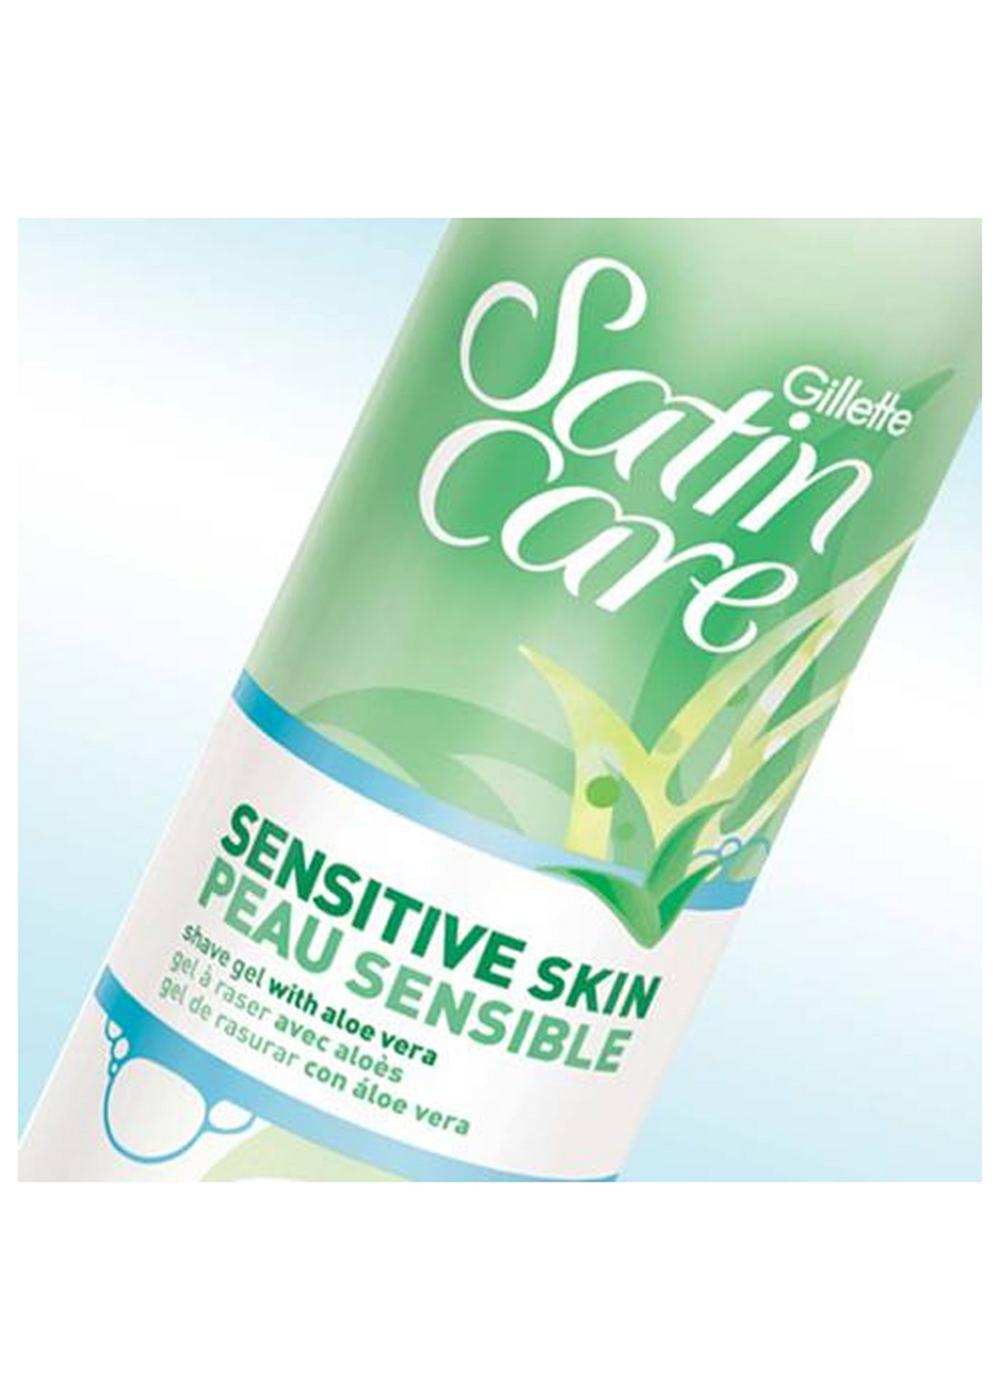 Gillette Satin Care Shave Gel - Sensitive Skin; image 7 of 7